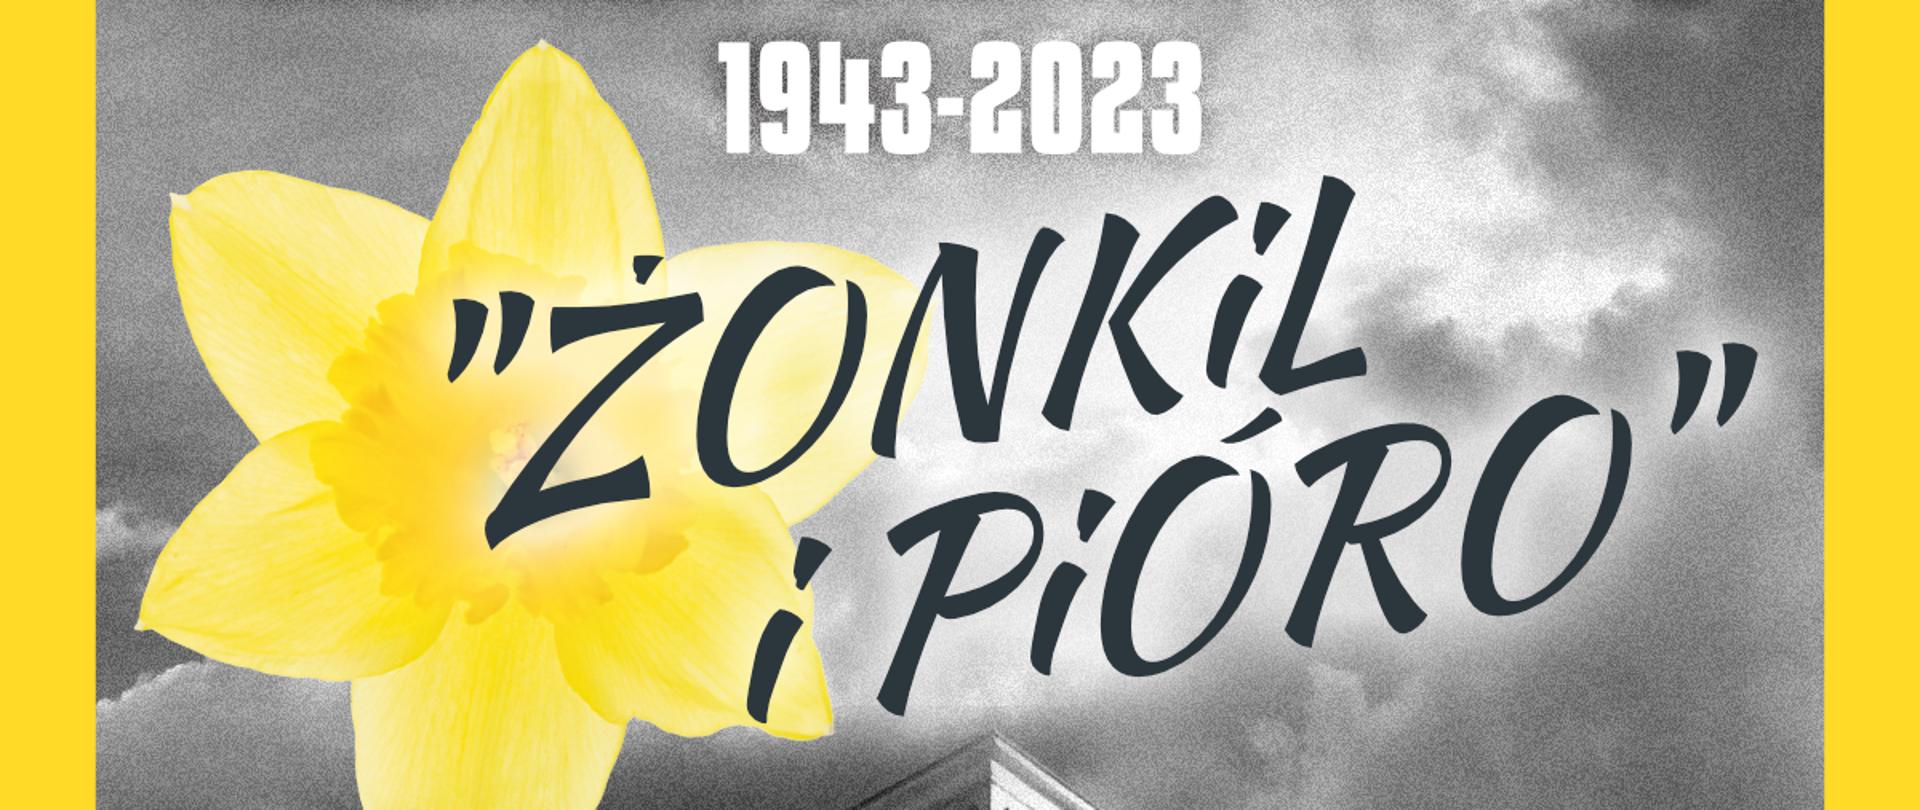 Plakat w kolorach czarno białych w żółtej ramce. W tle Synagoga Rutika w Dzierżoniowie i zaproszenie na koncert dnia 19 kwietnia br. o godz. 12:00 oraz nazwiska wykonawców. Na dole plakatu loga organizatorów koncertu.